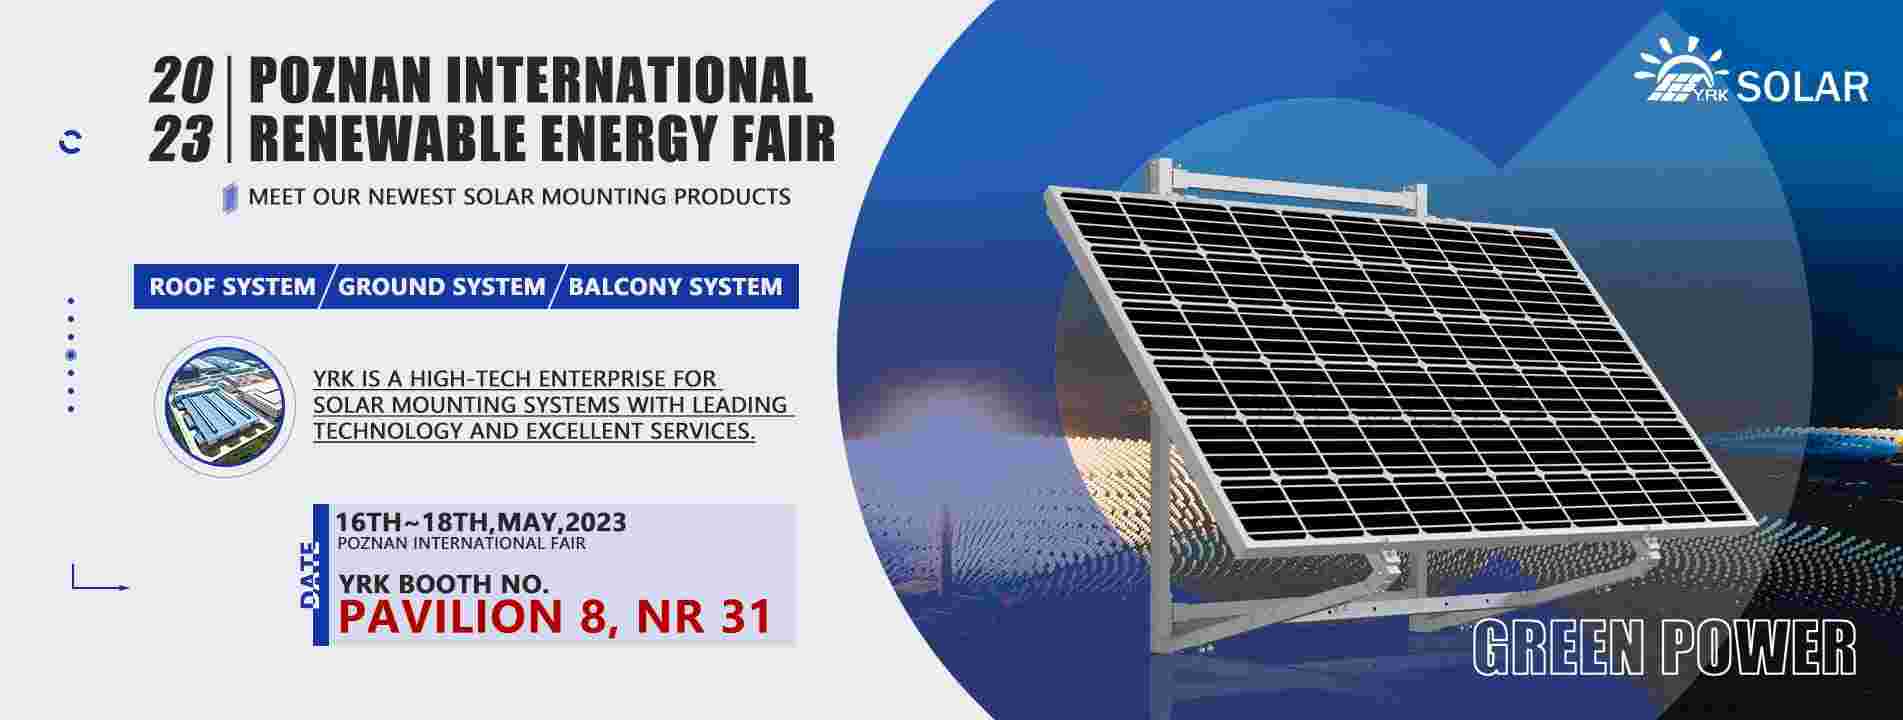 Salon international des énergies renouvelables de Poznan 2023